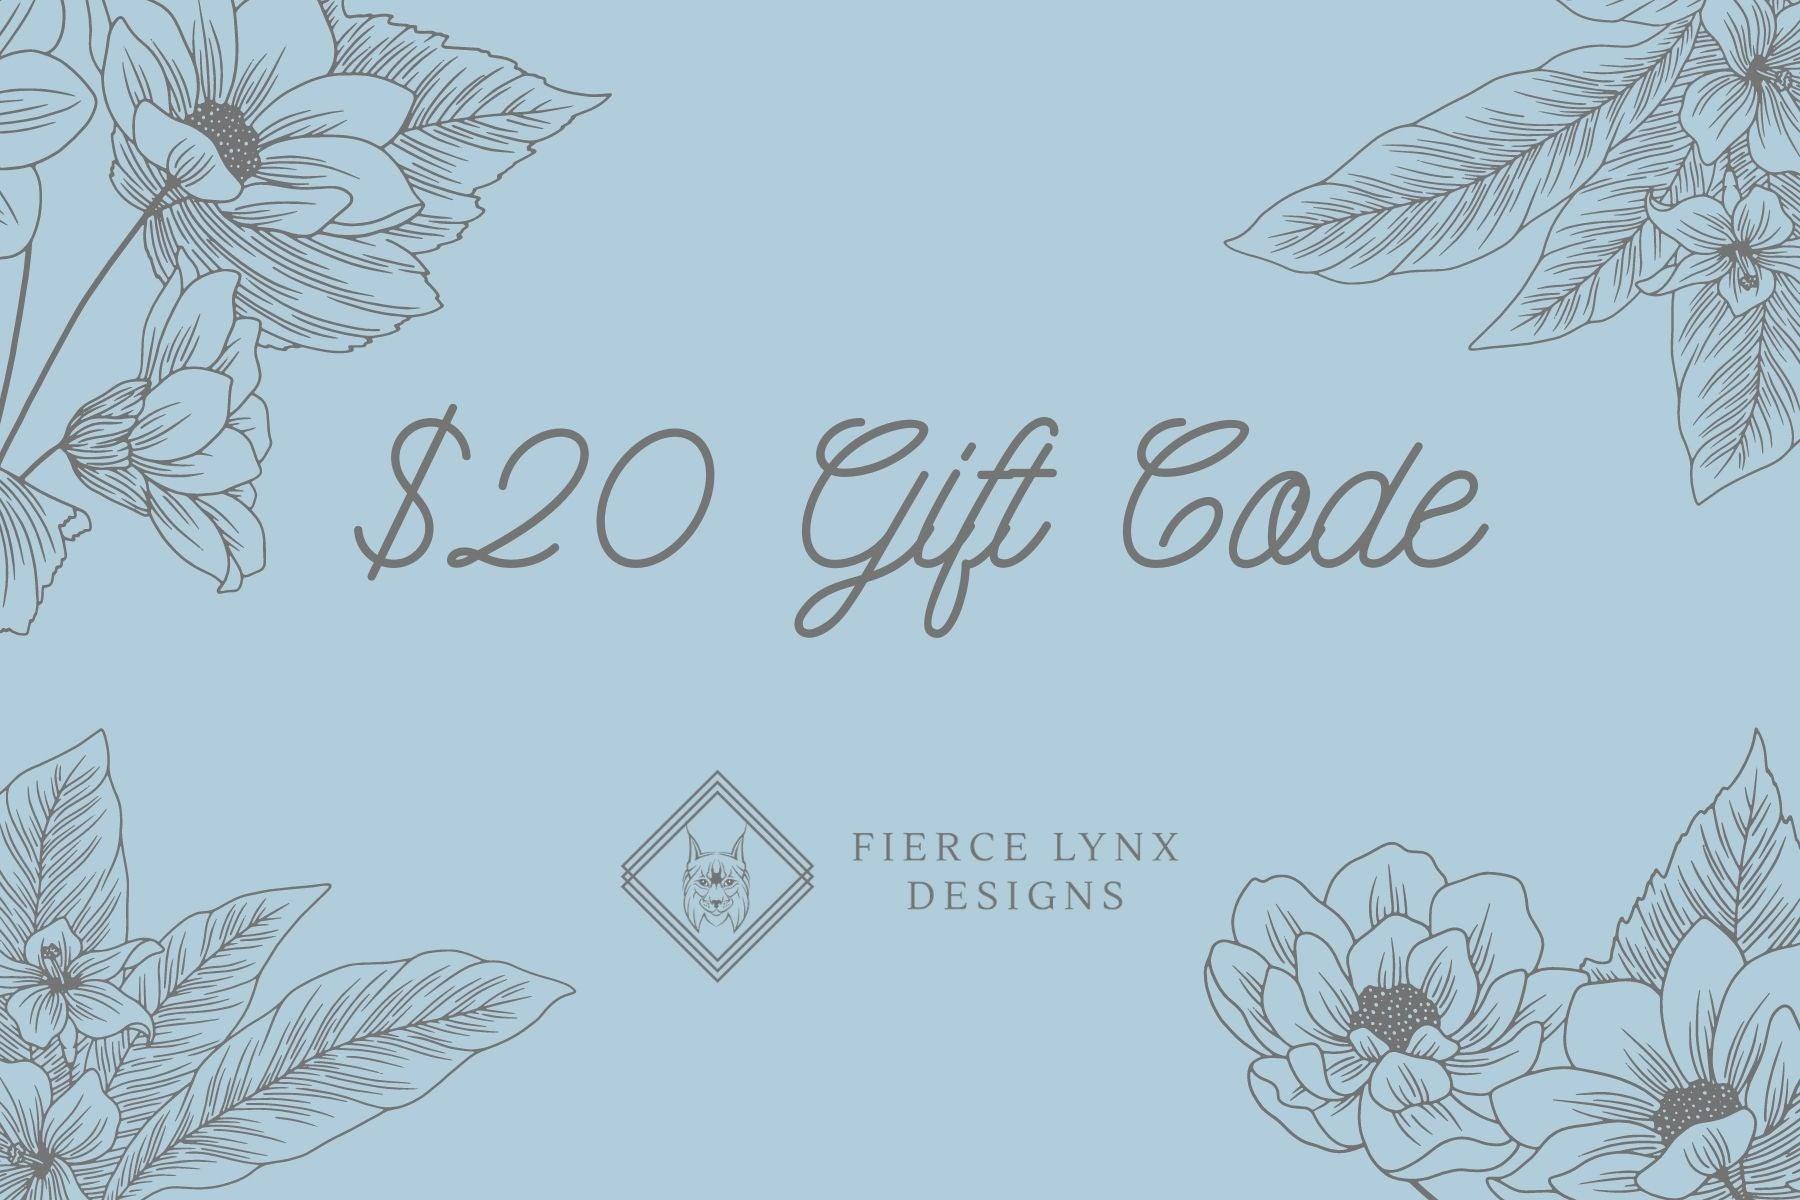 Gift Card - Fierce Lynx Designs